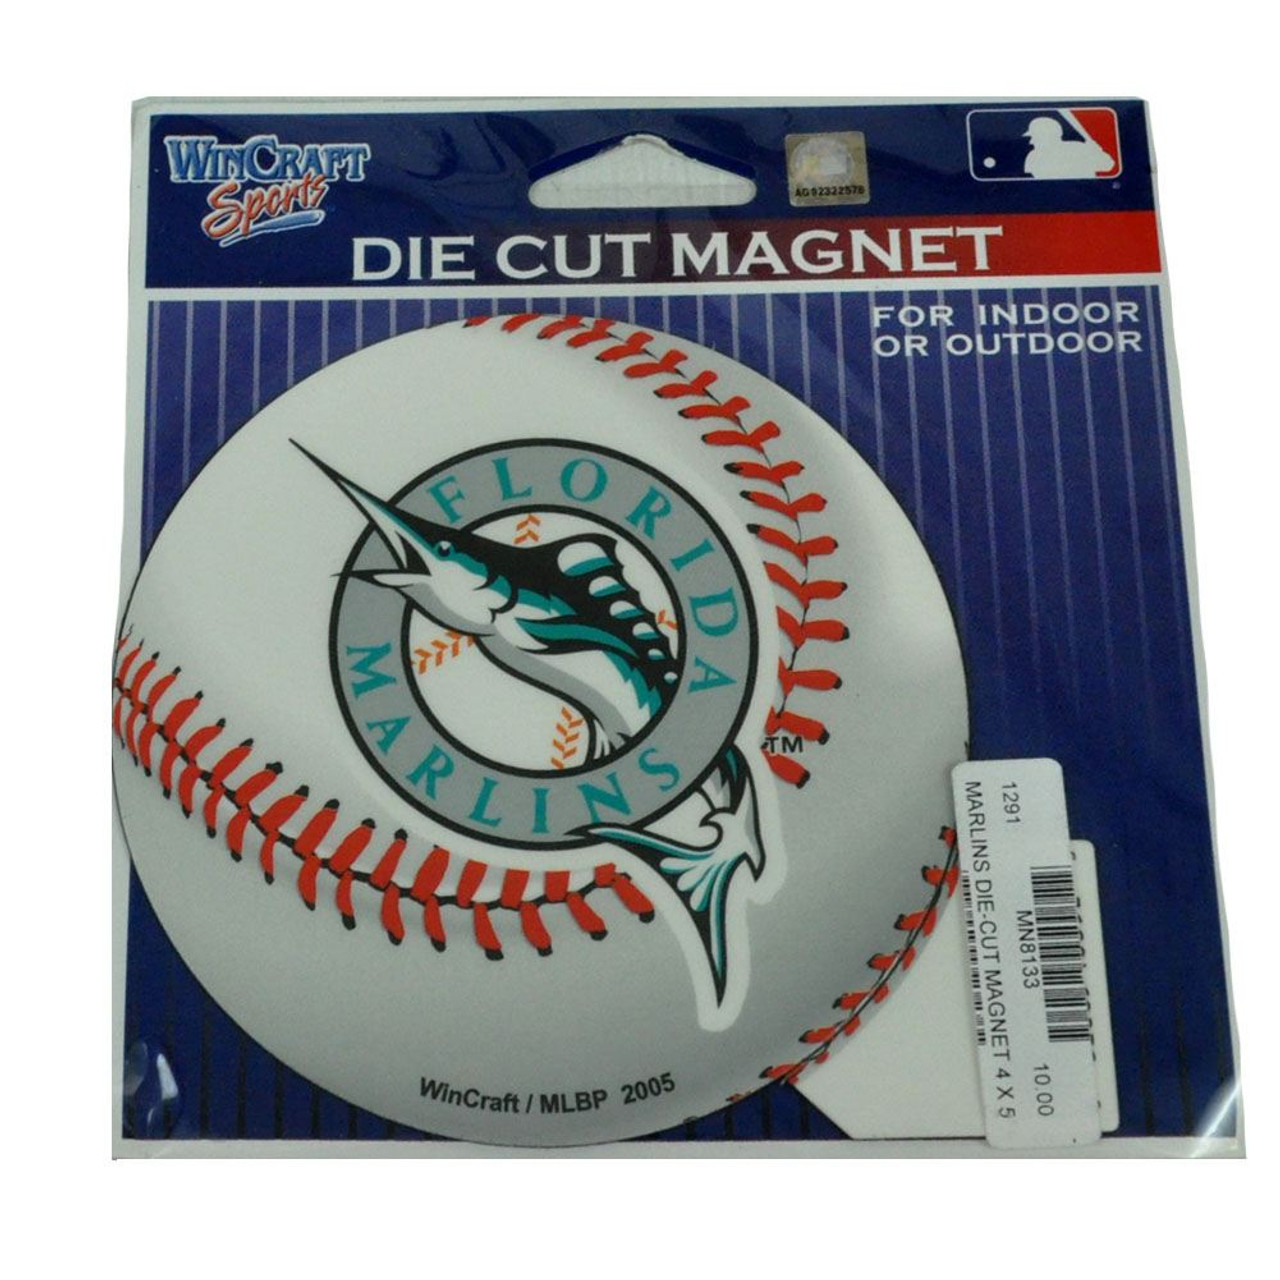 MLB Baseball Florida Marlins Logo Jersey Licensed Fan Magnets Set